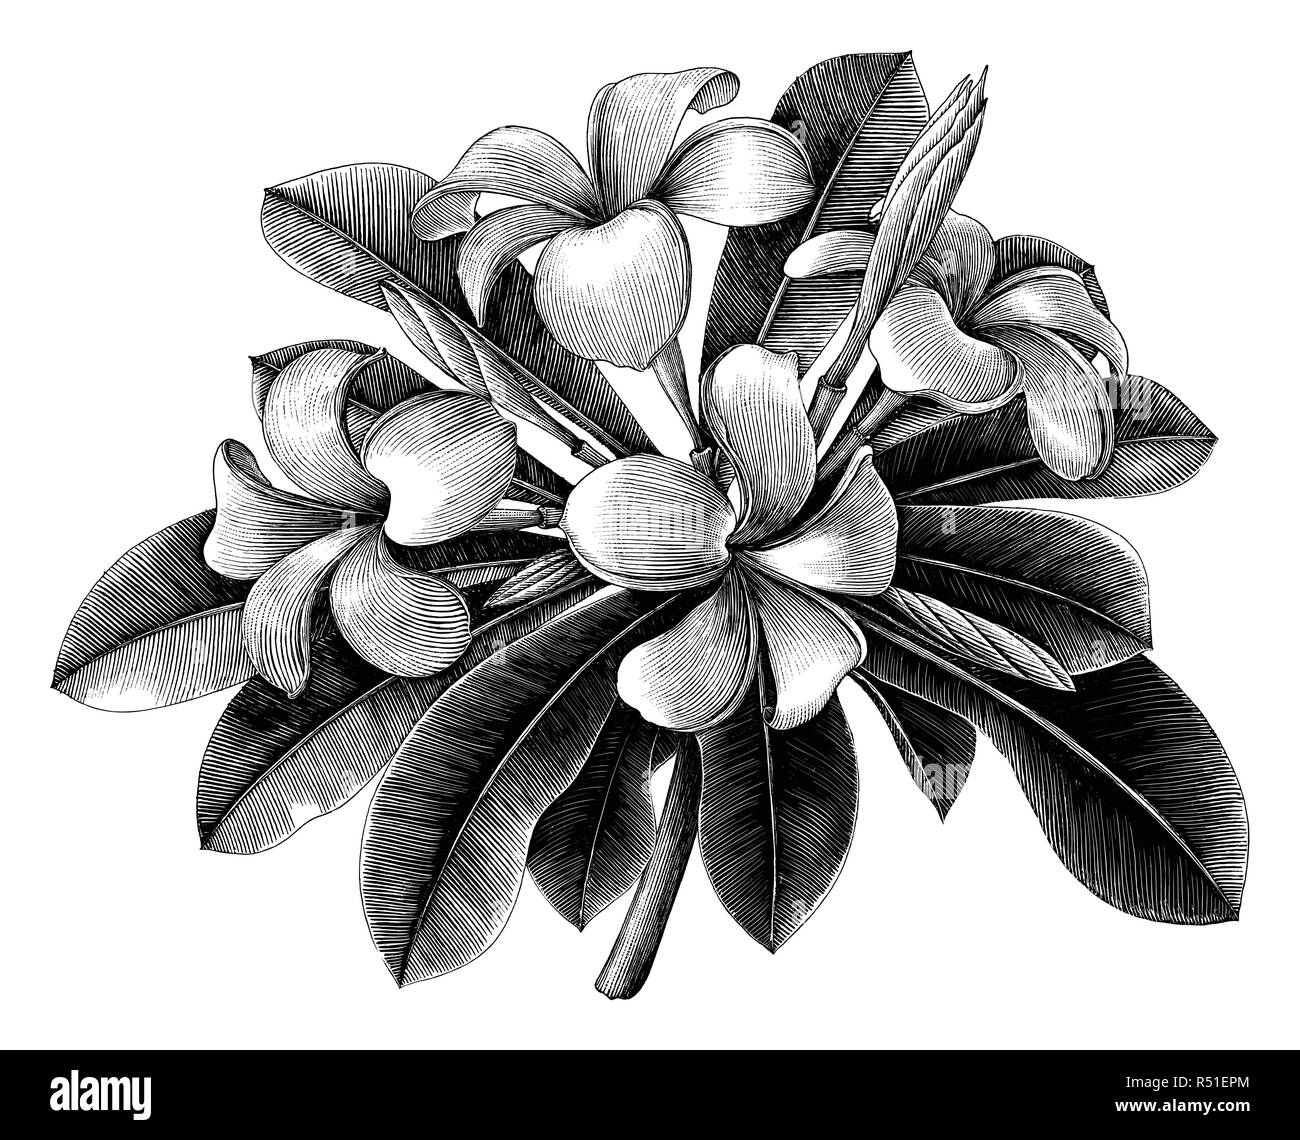 Fiori di frangipani disegnare a mano incisione vintage clip art isolati su sfondo bianco Illustrazione Vettoriale